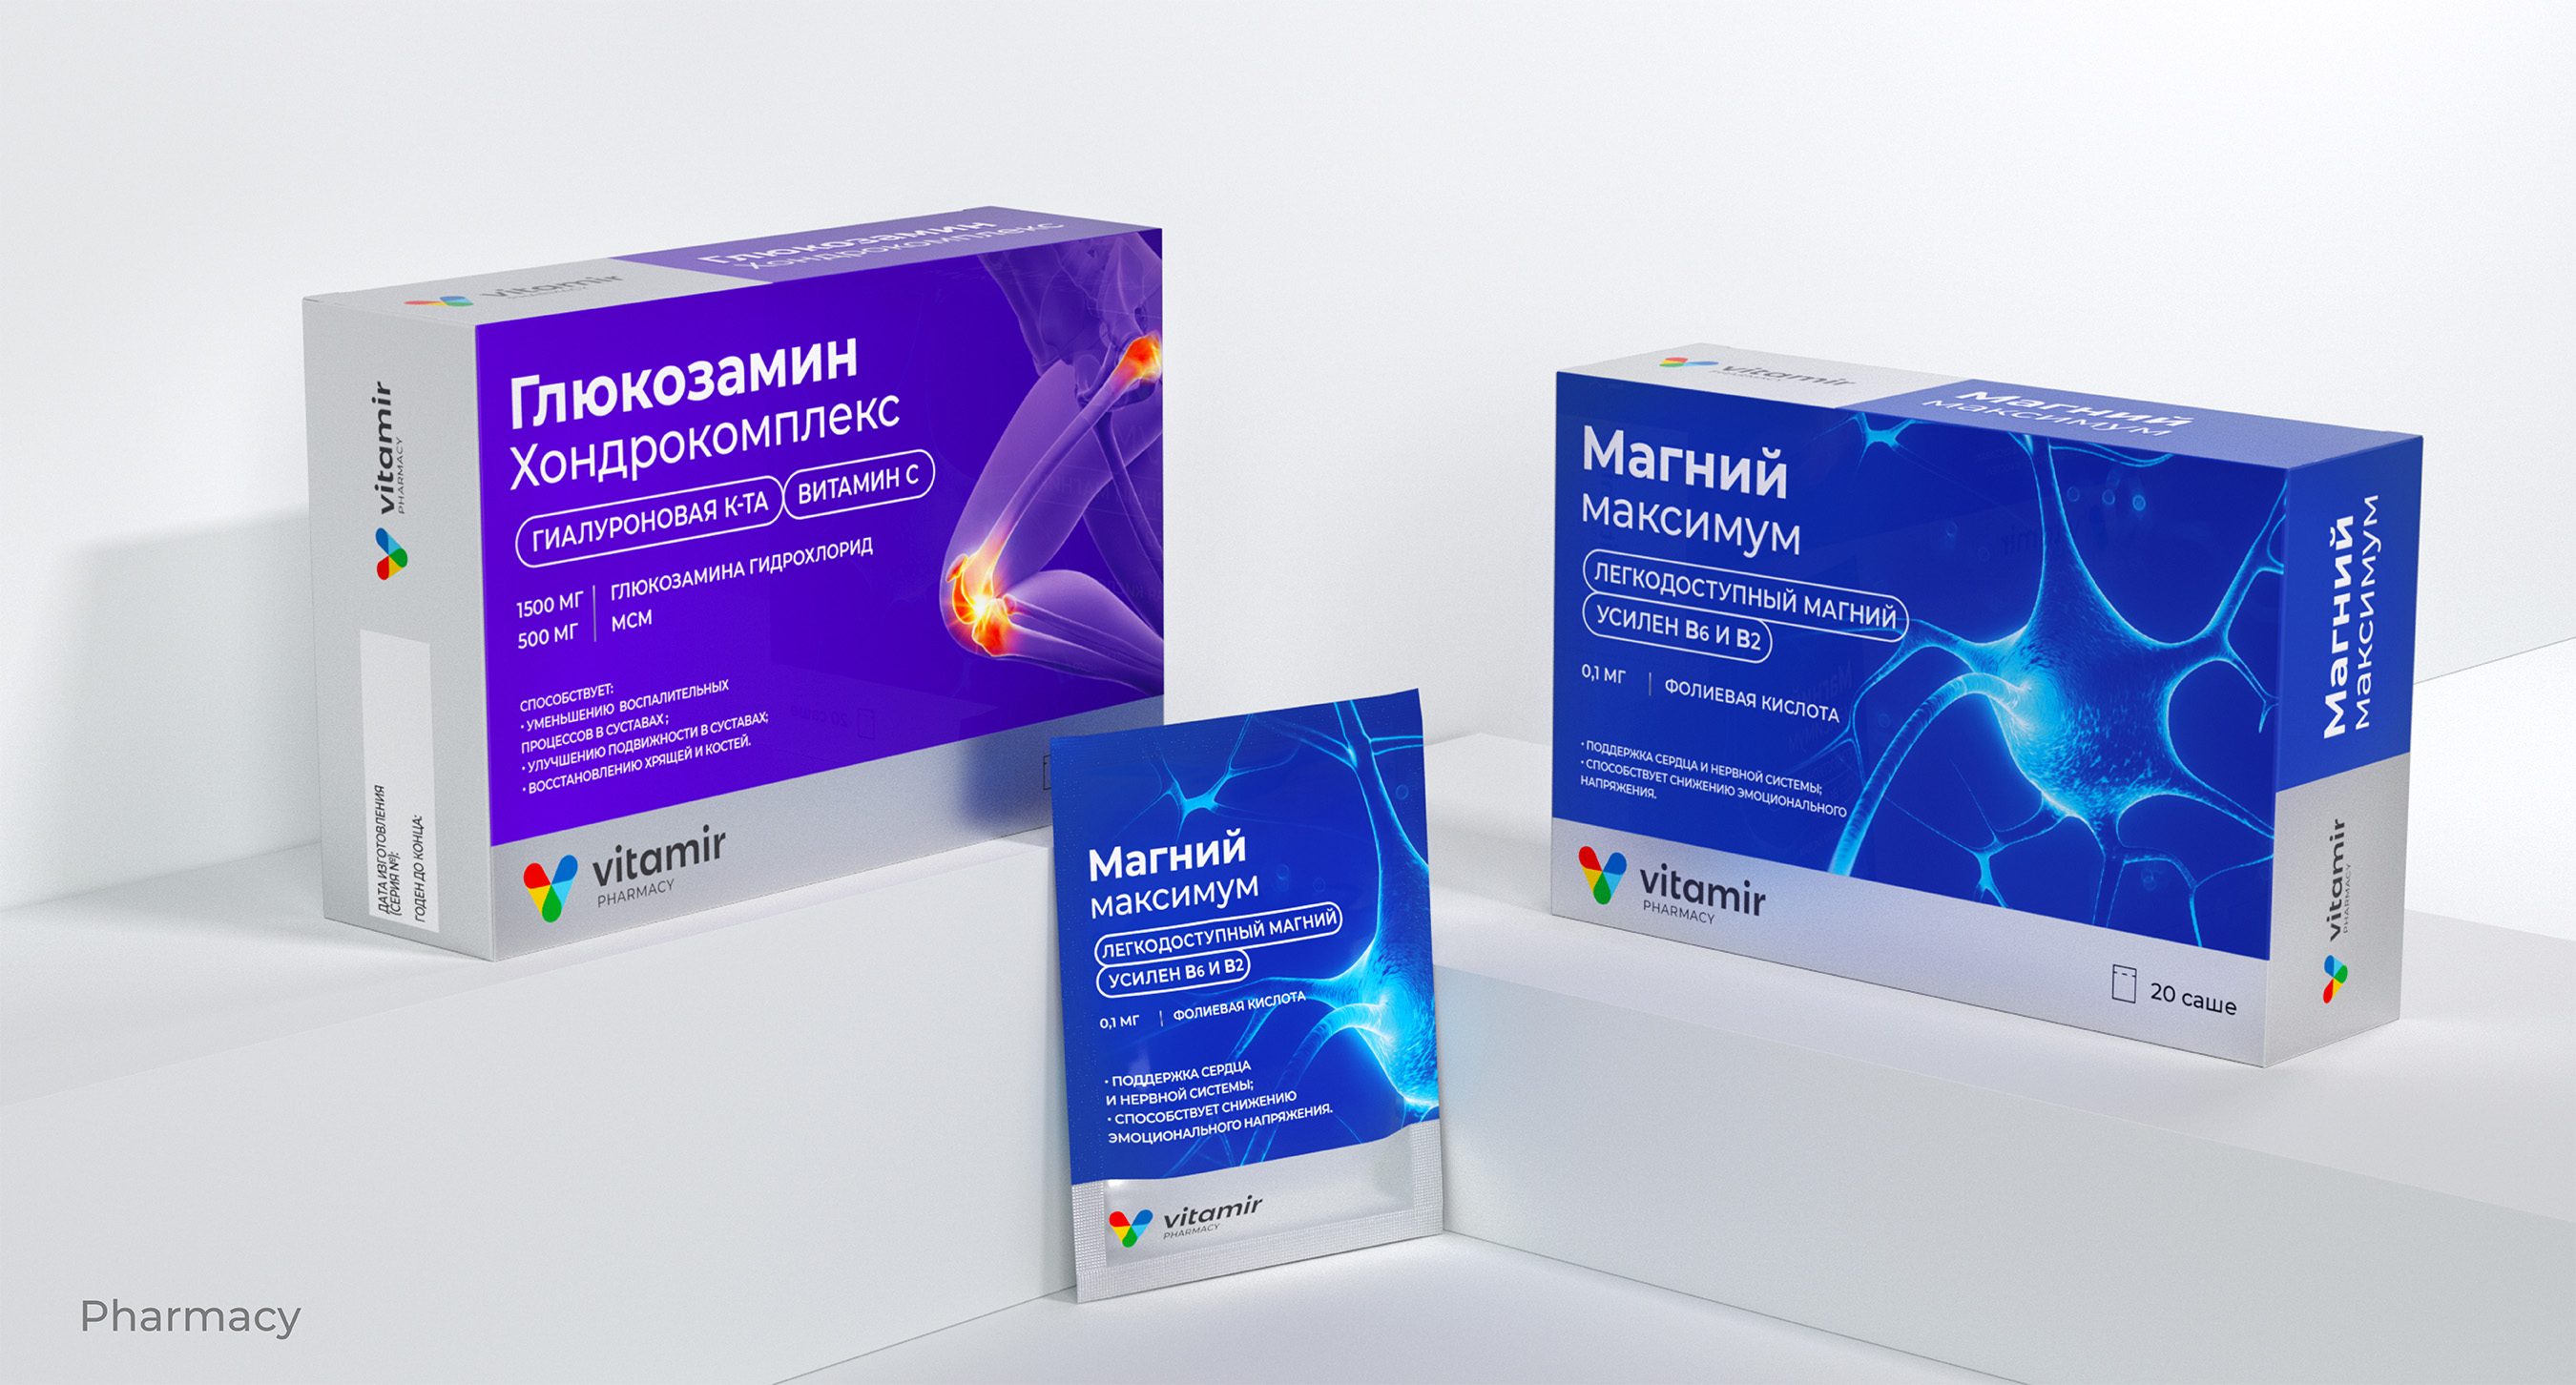 Дизайн упаковки продуктов Vitamir